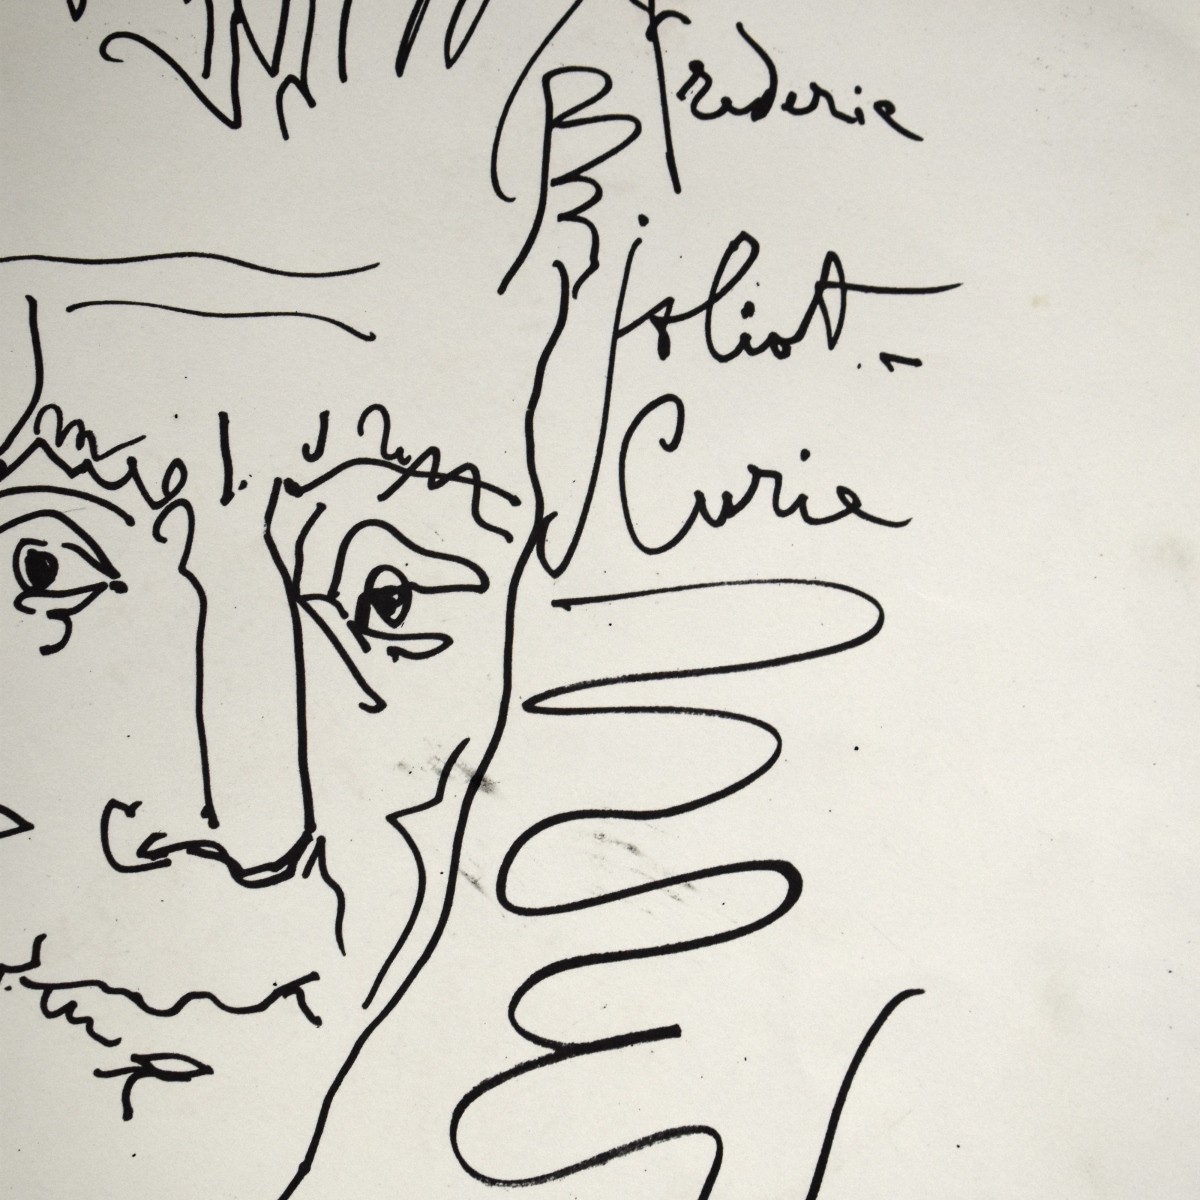 Pablo Picasso, Spanish (1881 - 1973)